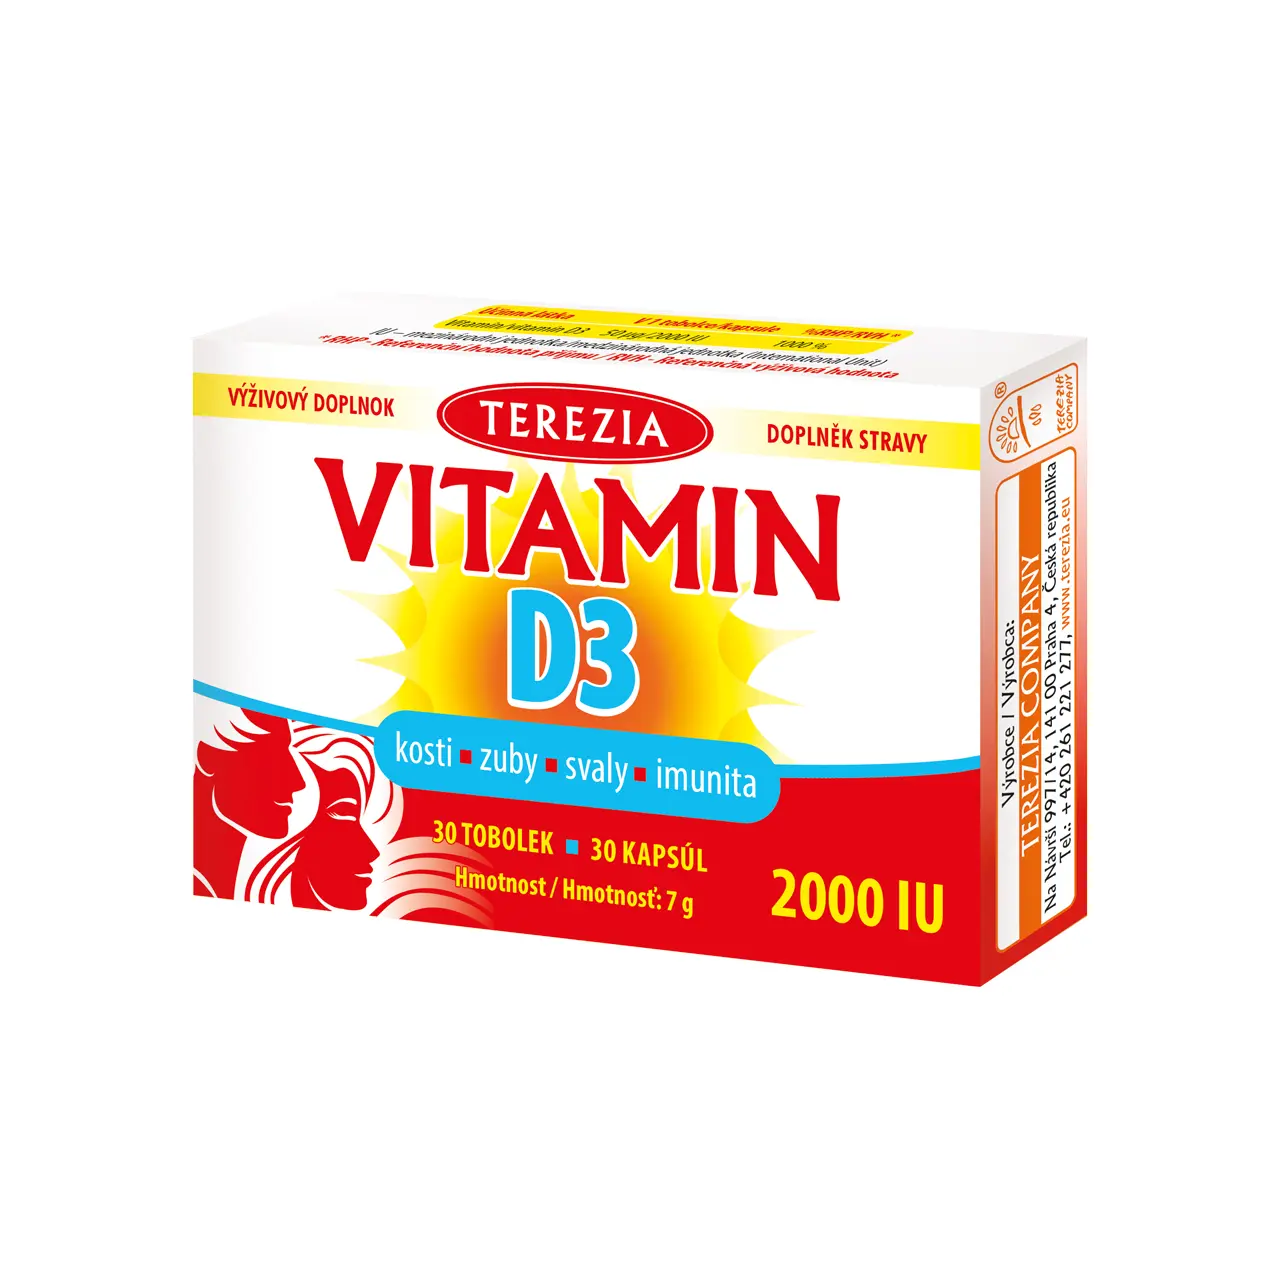 TEREZIA Vitamin D3 2000 IU 30 tobolek